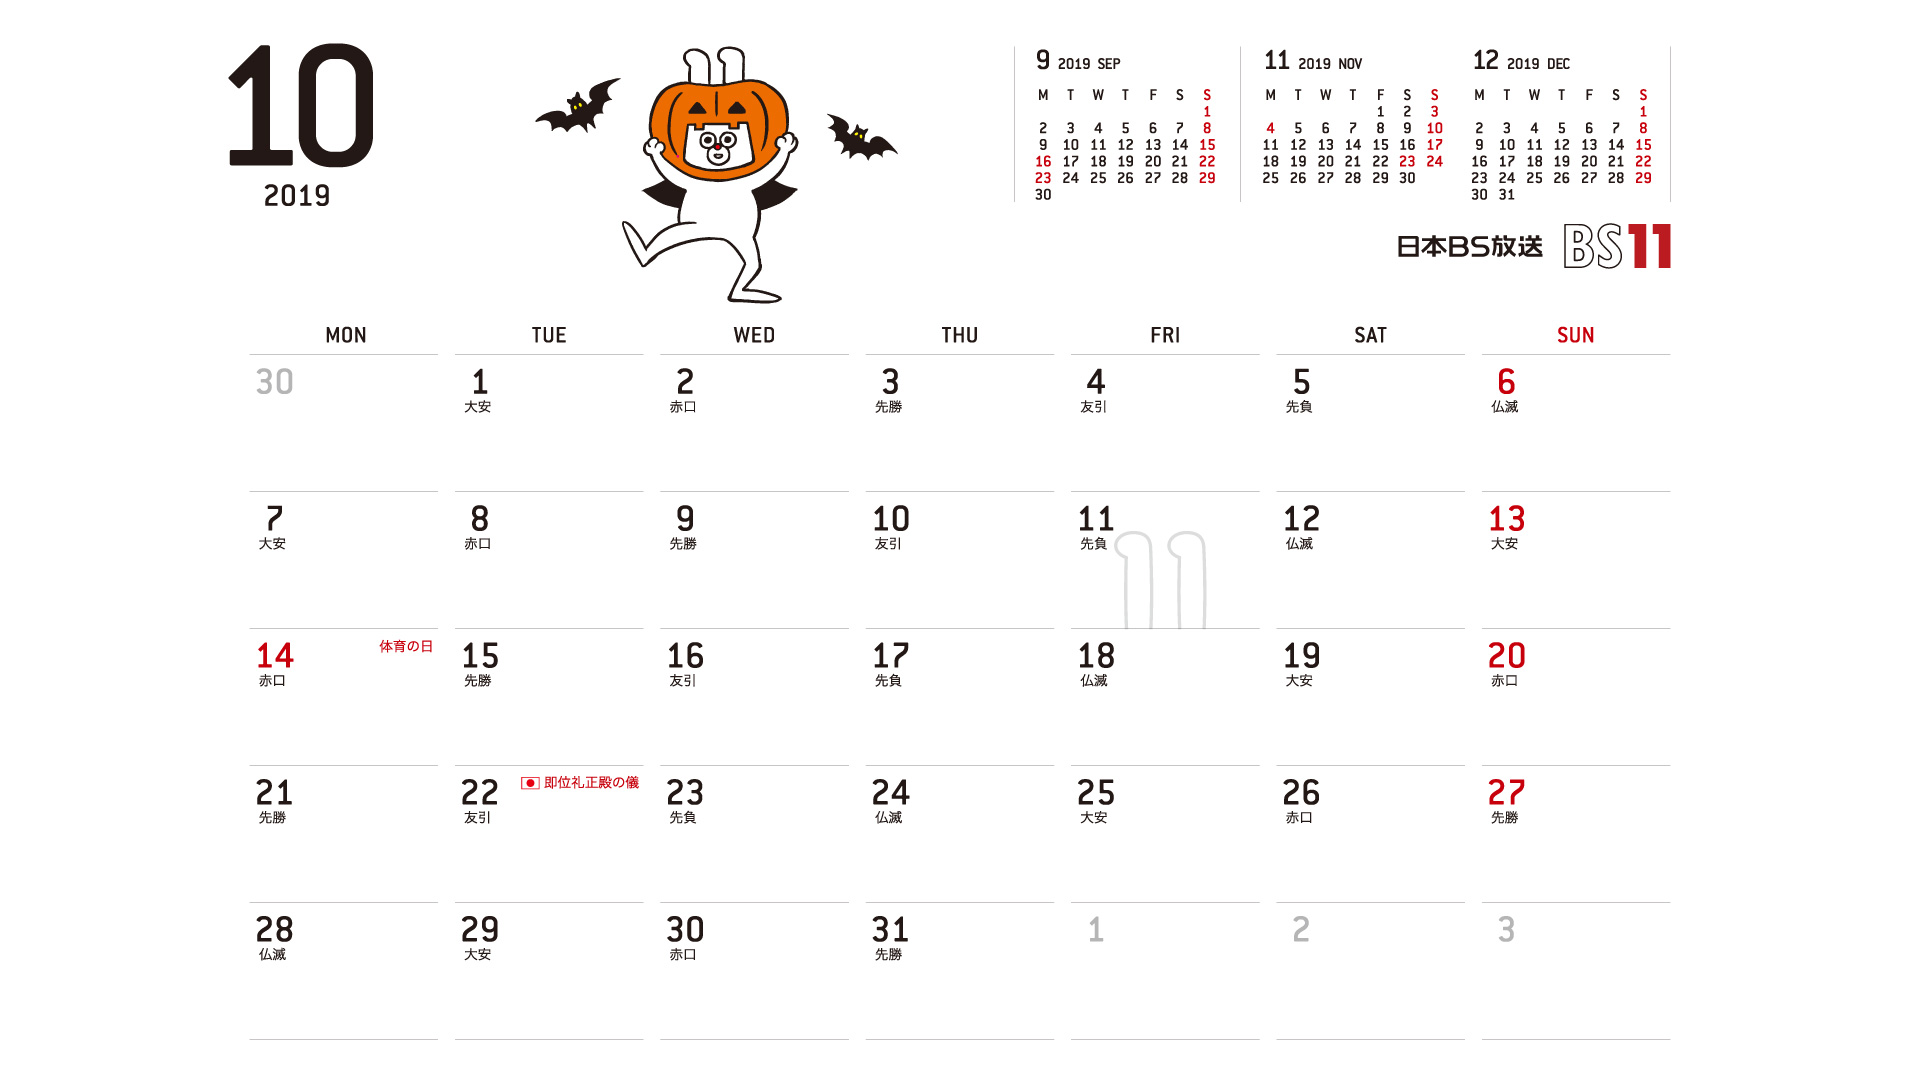 じゅういっちゃんのデジタルカレンダー2019年10月 Bs11 イレブン いつでも無料放送